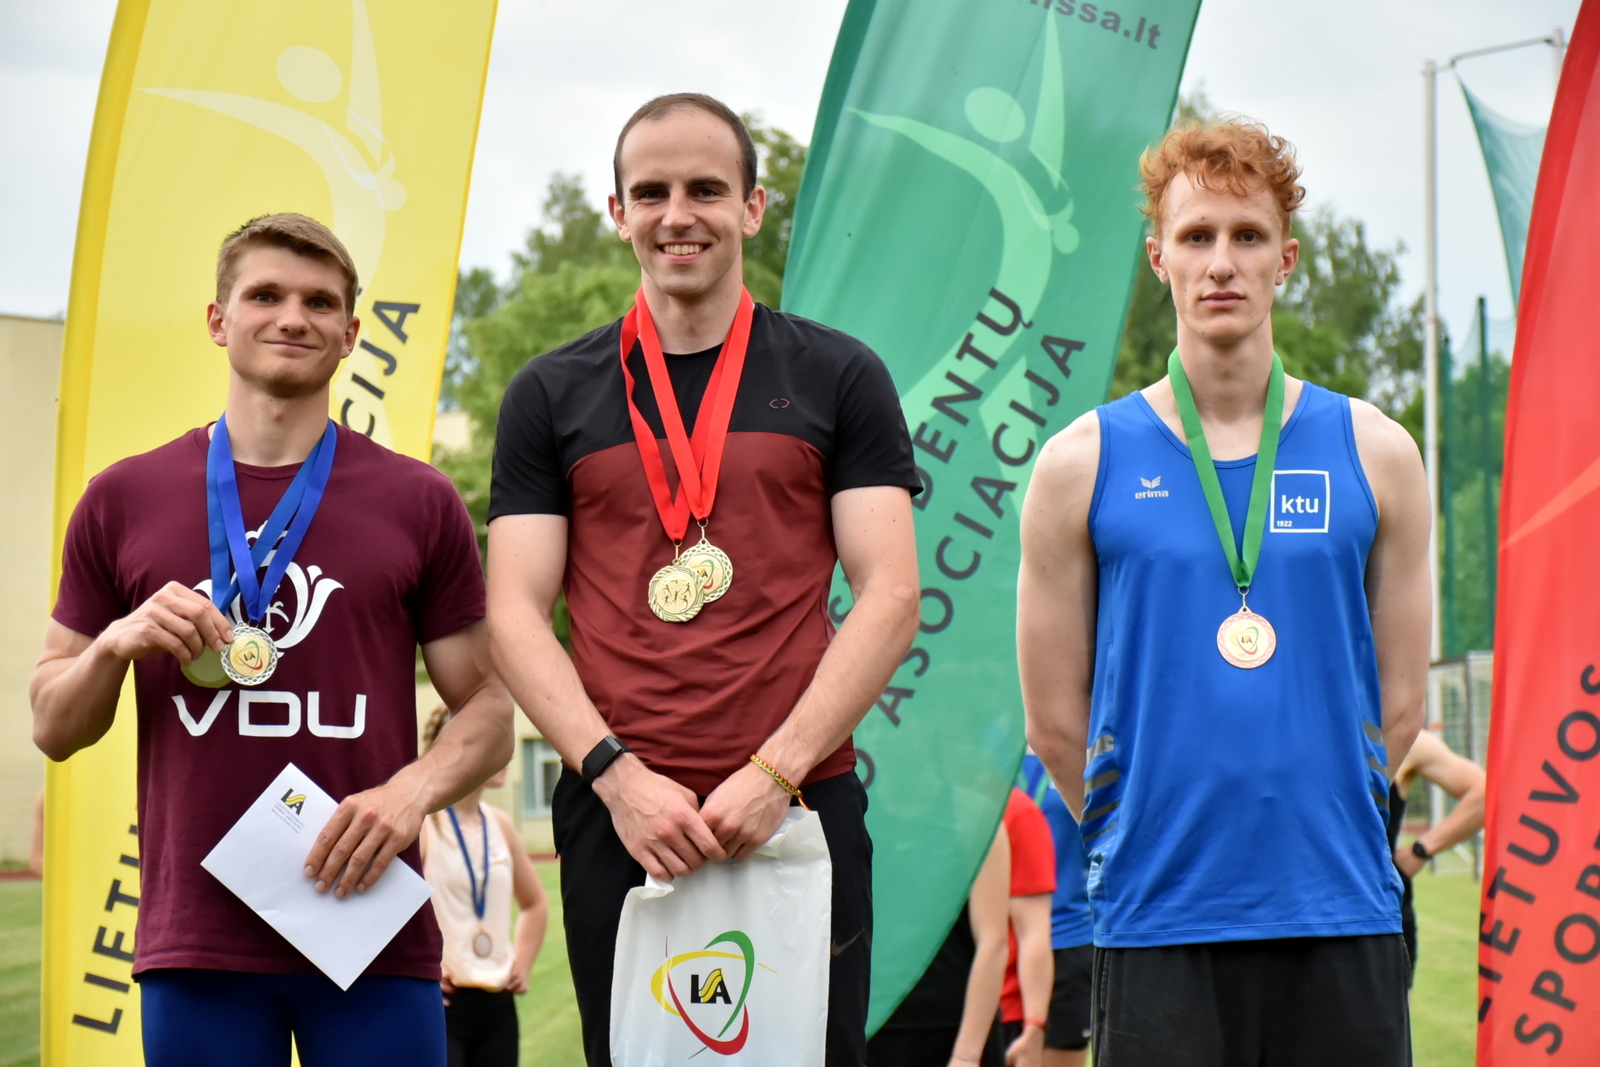 Trys vaikinai stovi Lietuvos vėliavos fone, su užkabintais ant kaklo medaliais